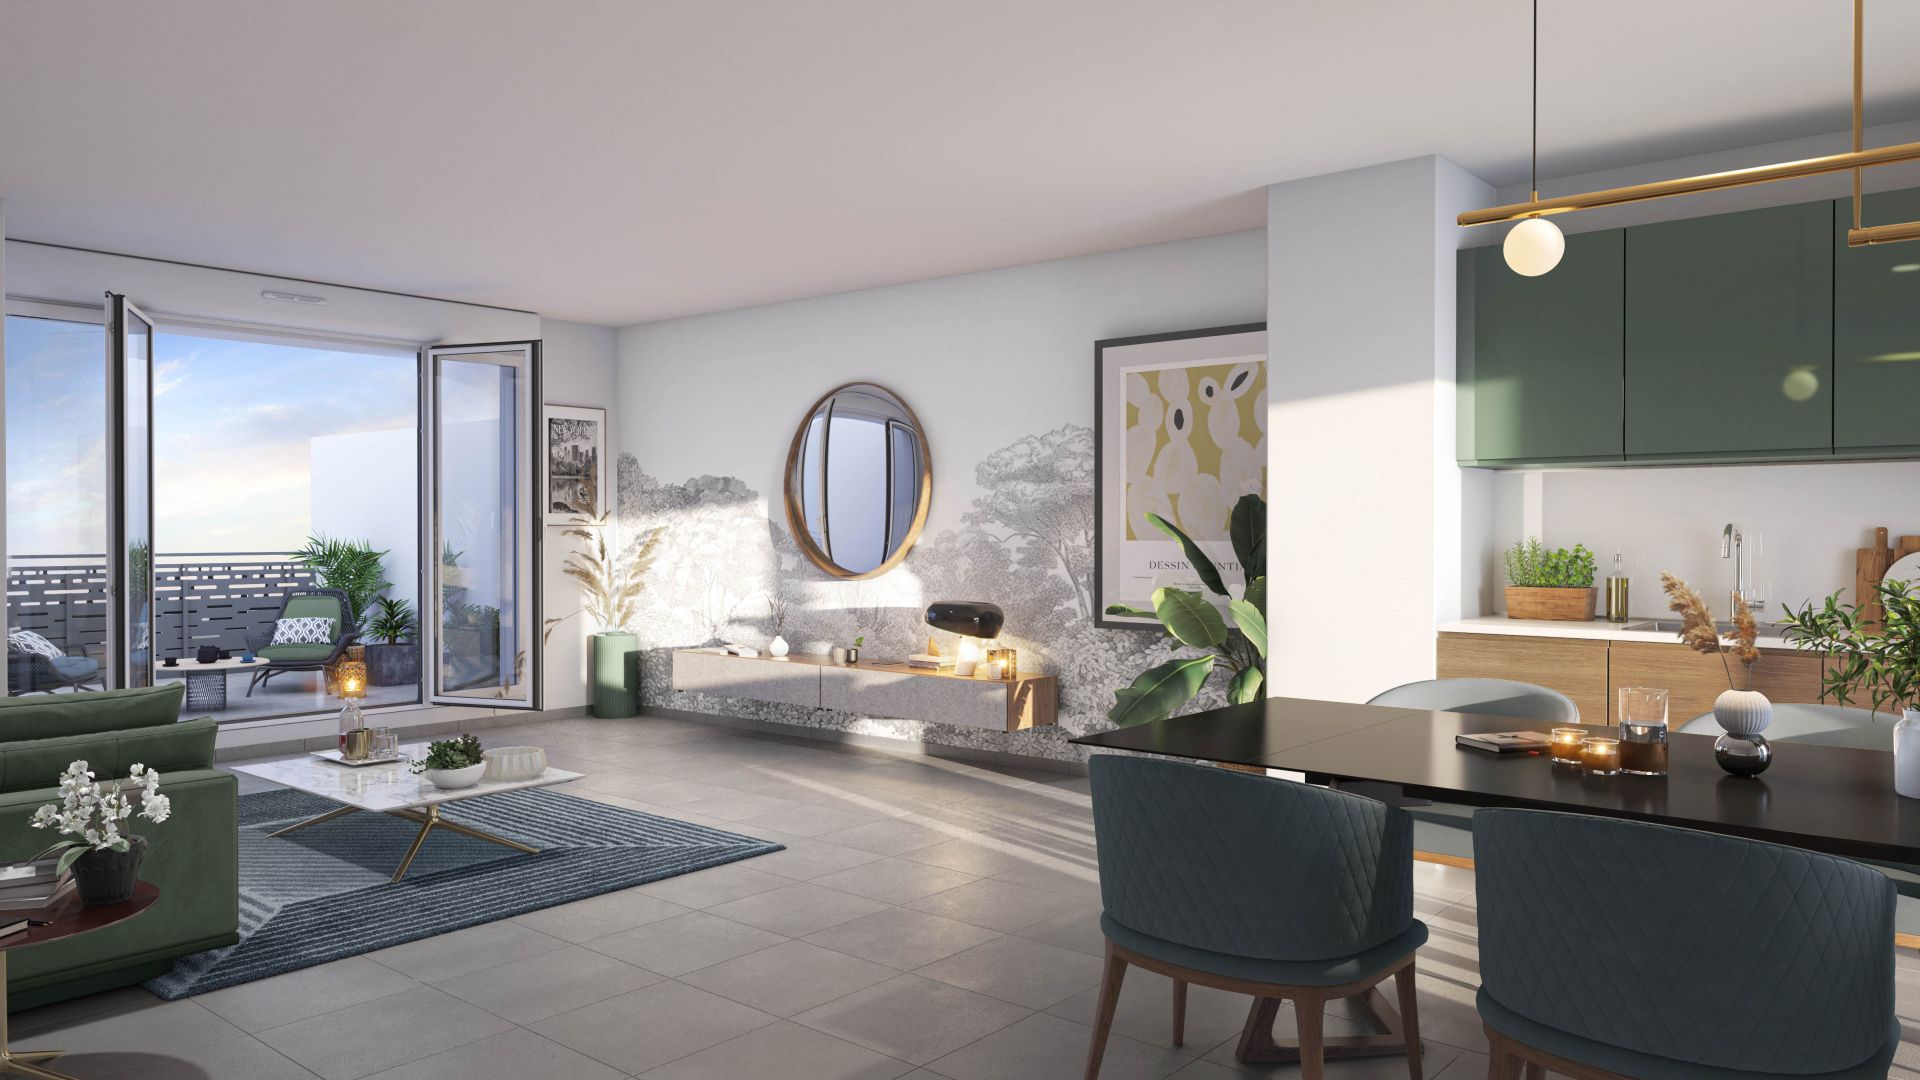 Greencity immobilier - achat appartements neufs du T2 au T4 - Résidence Le Silvance - 77380 Combs-La-Ville - vue intérieure